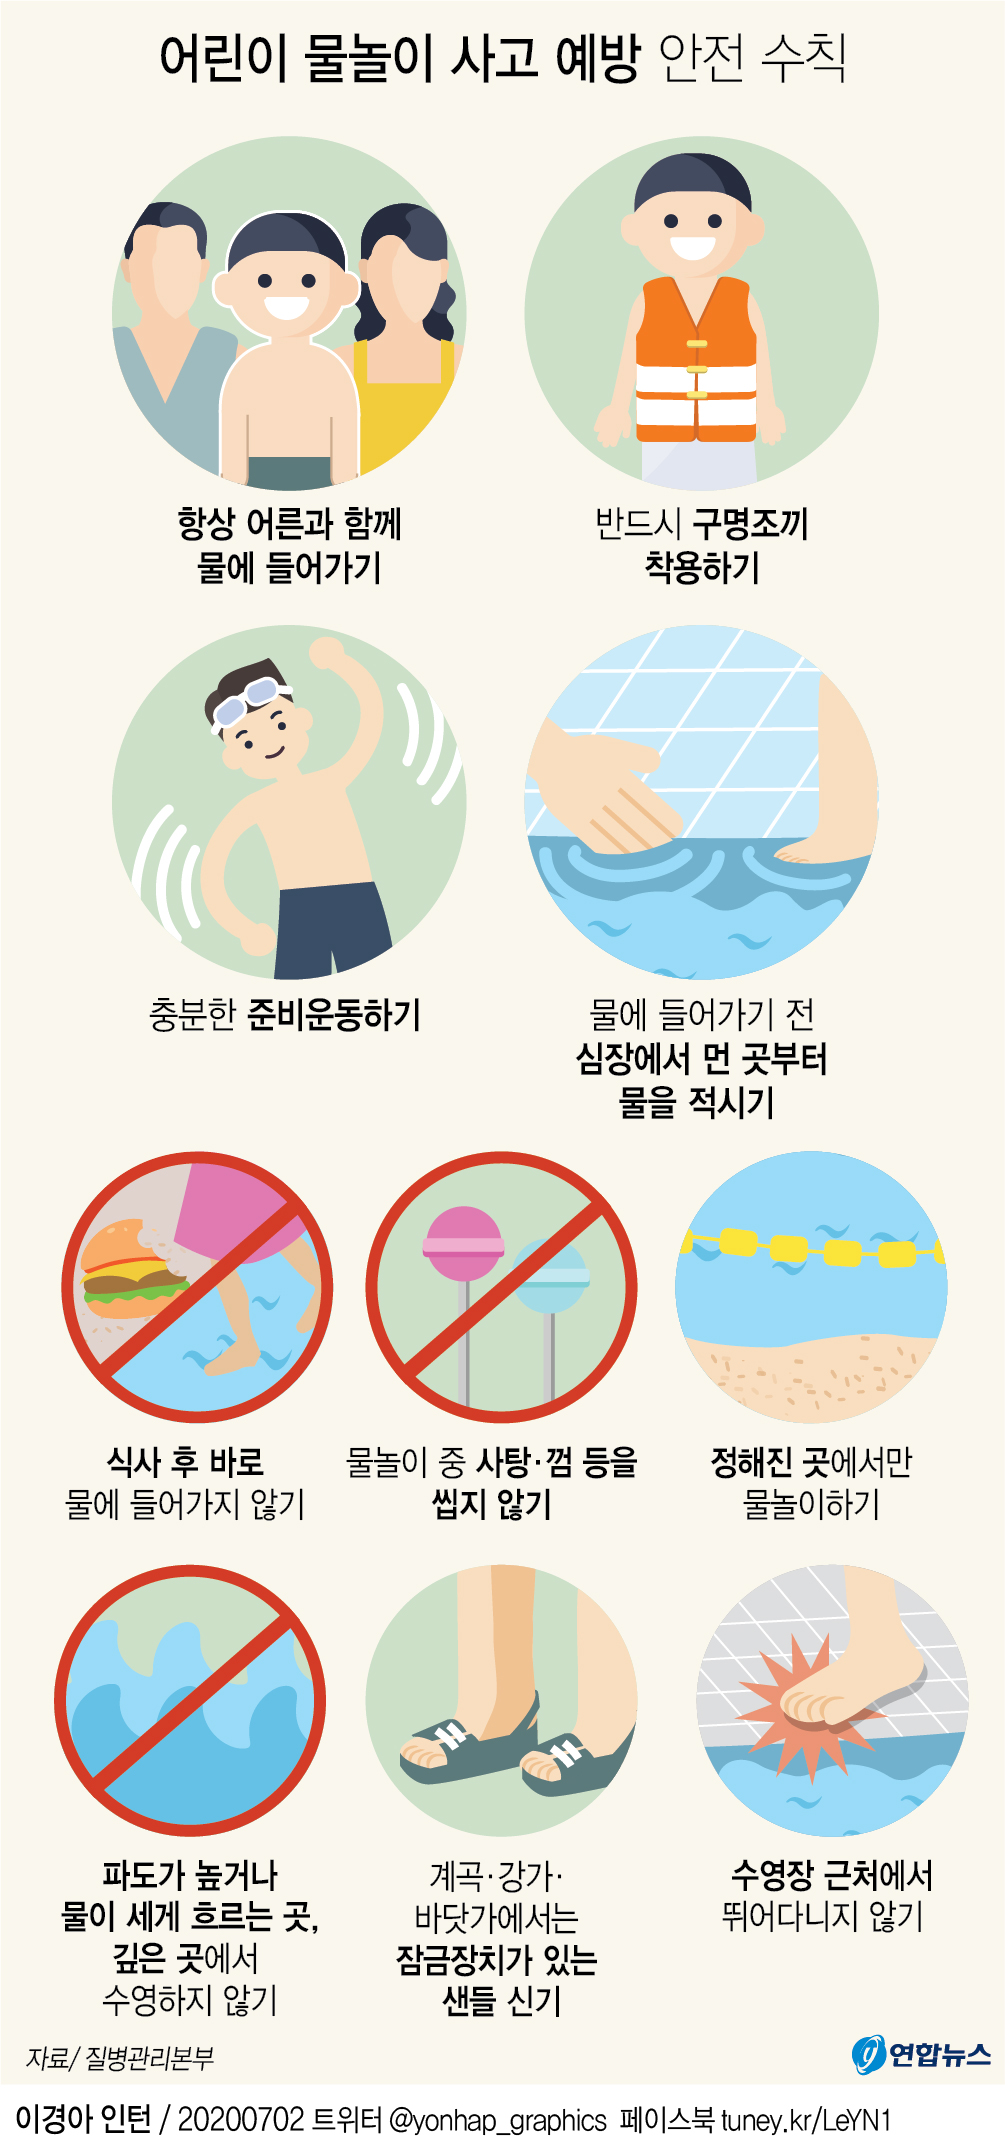 [그래픽] 어린이 물놀이 사고 예방 안전수칙